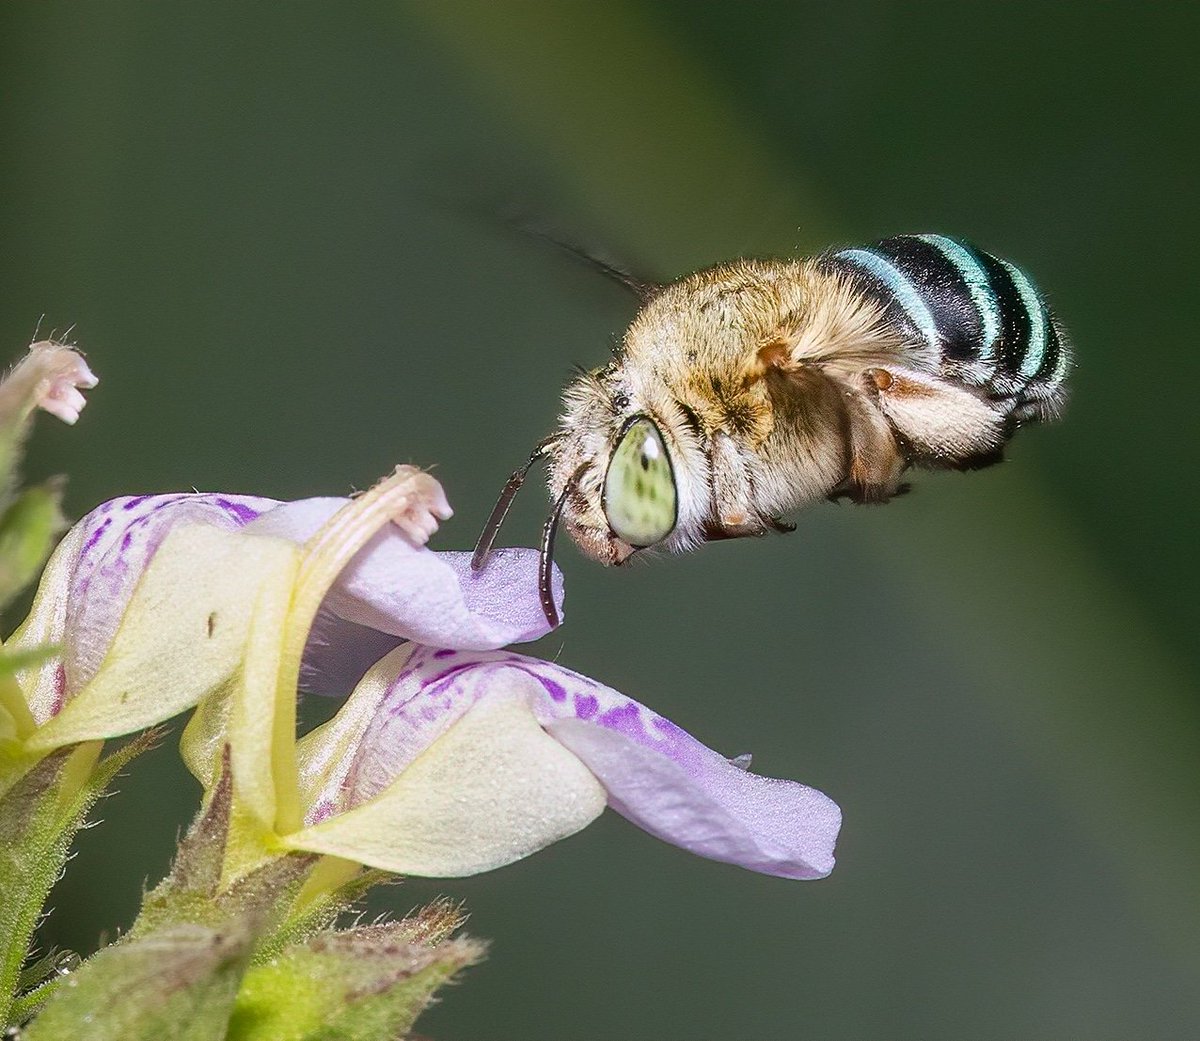 Blue banded bee 
#bee #bluebanded
#ThePhotoHour  #nativebees #macro #pollinator #NaturePhotography #BBCWildlifePOTD #TwitterNatureCommunity